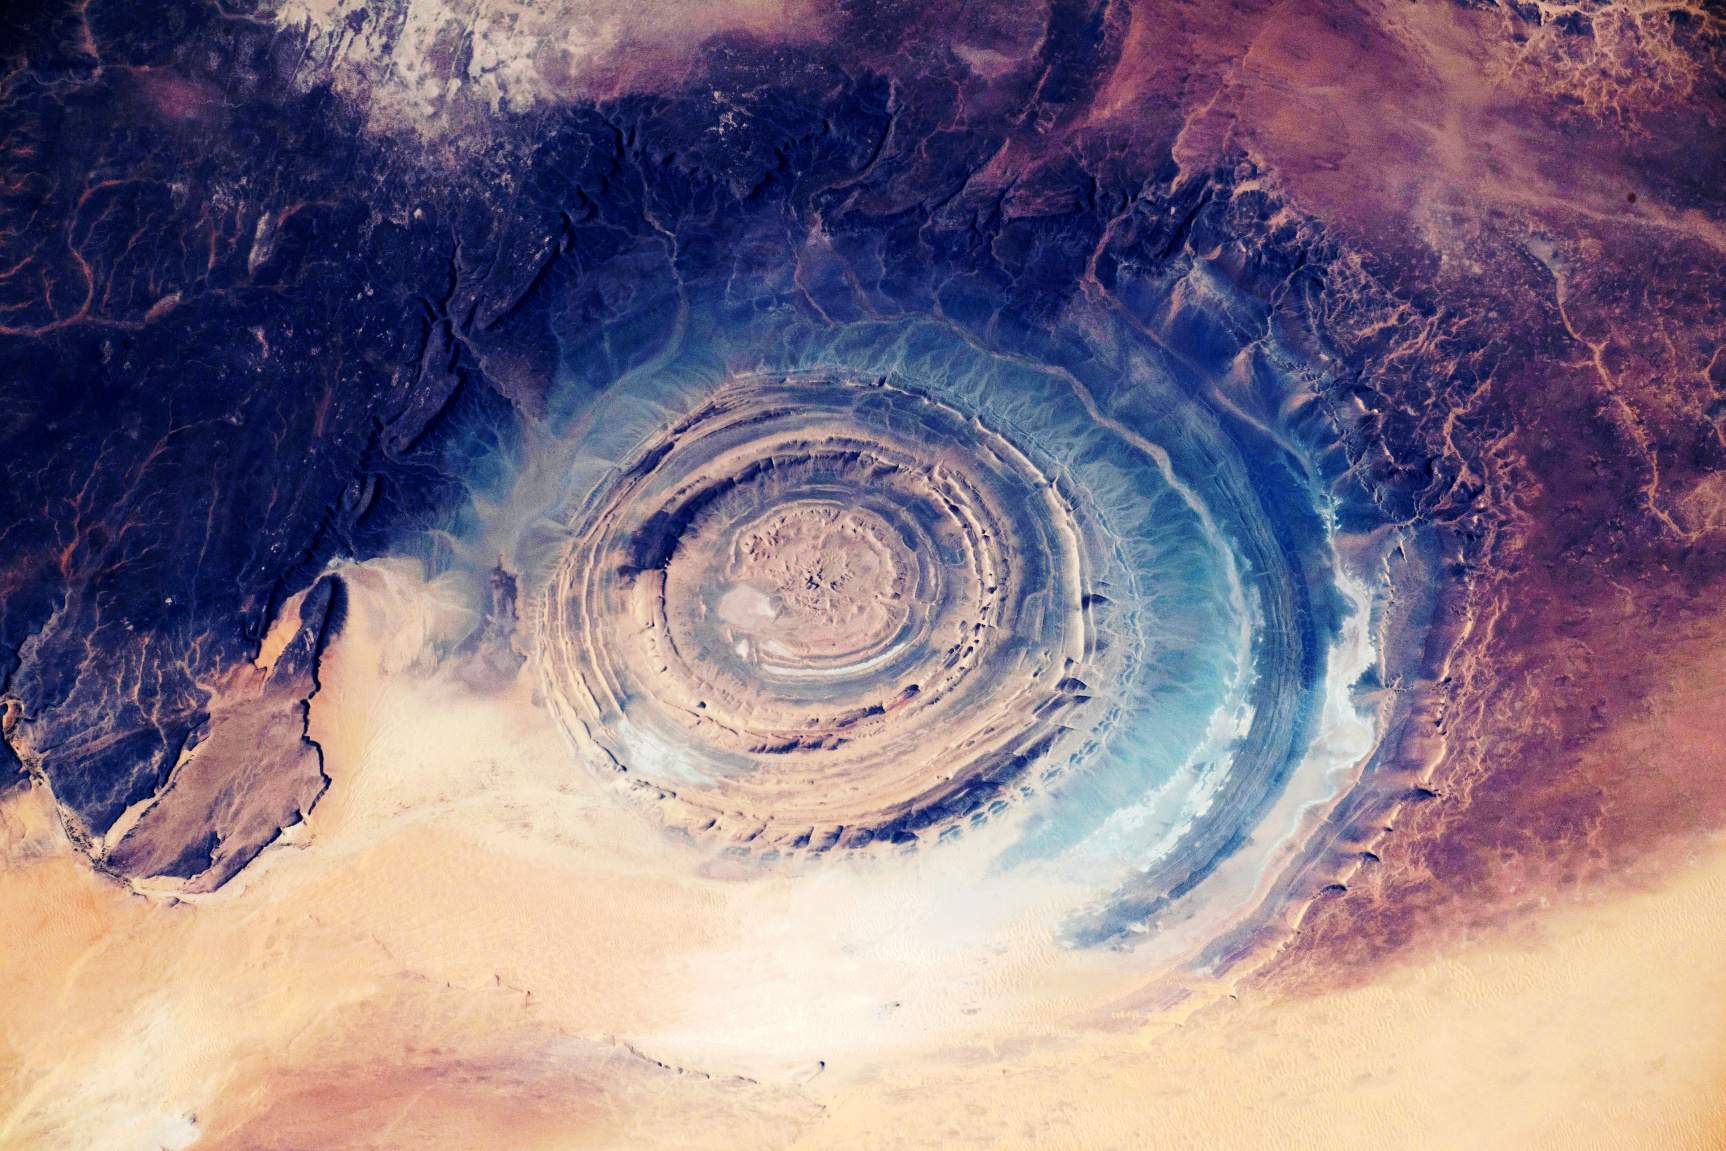 Richat-struktur: Er dette Atlantis, der gemmer sig i almindeligt syn i Sahara? 4